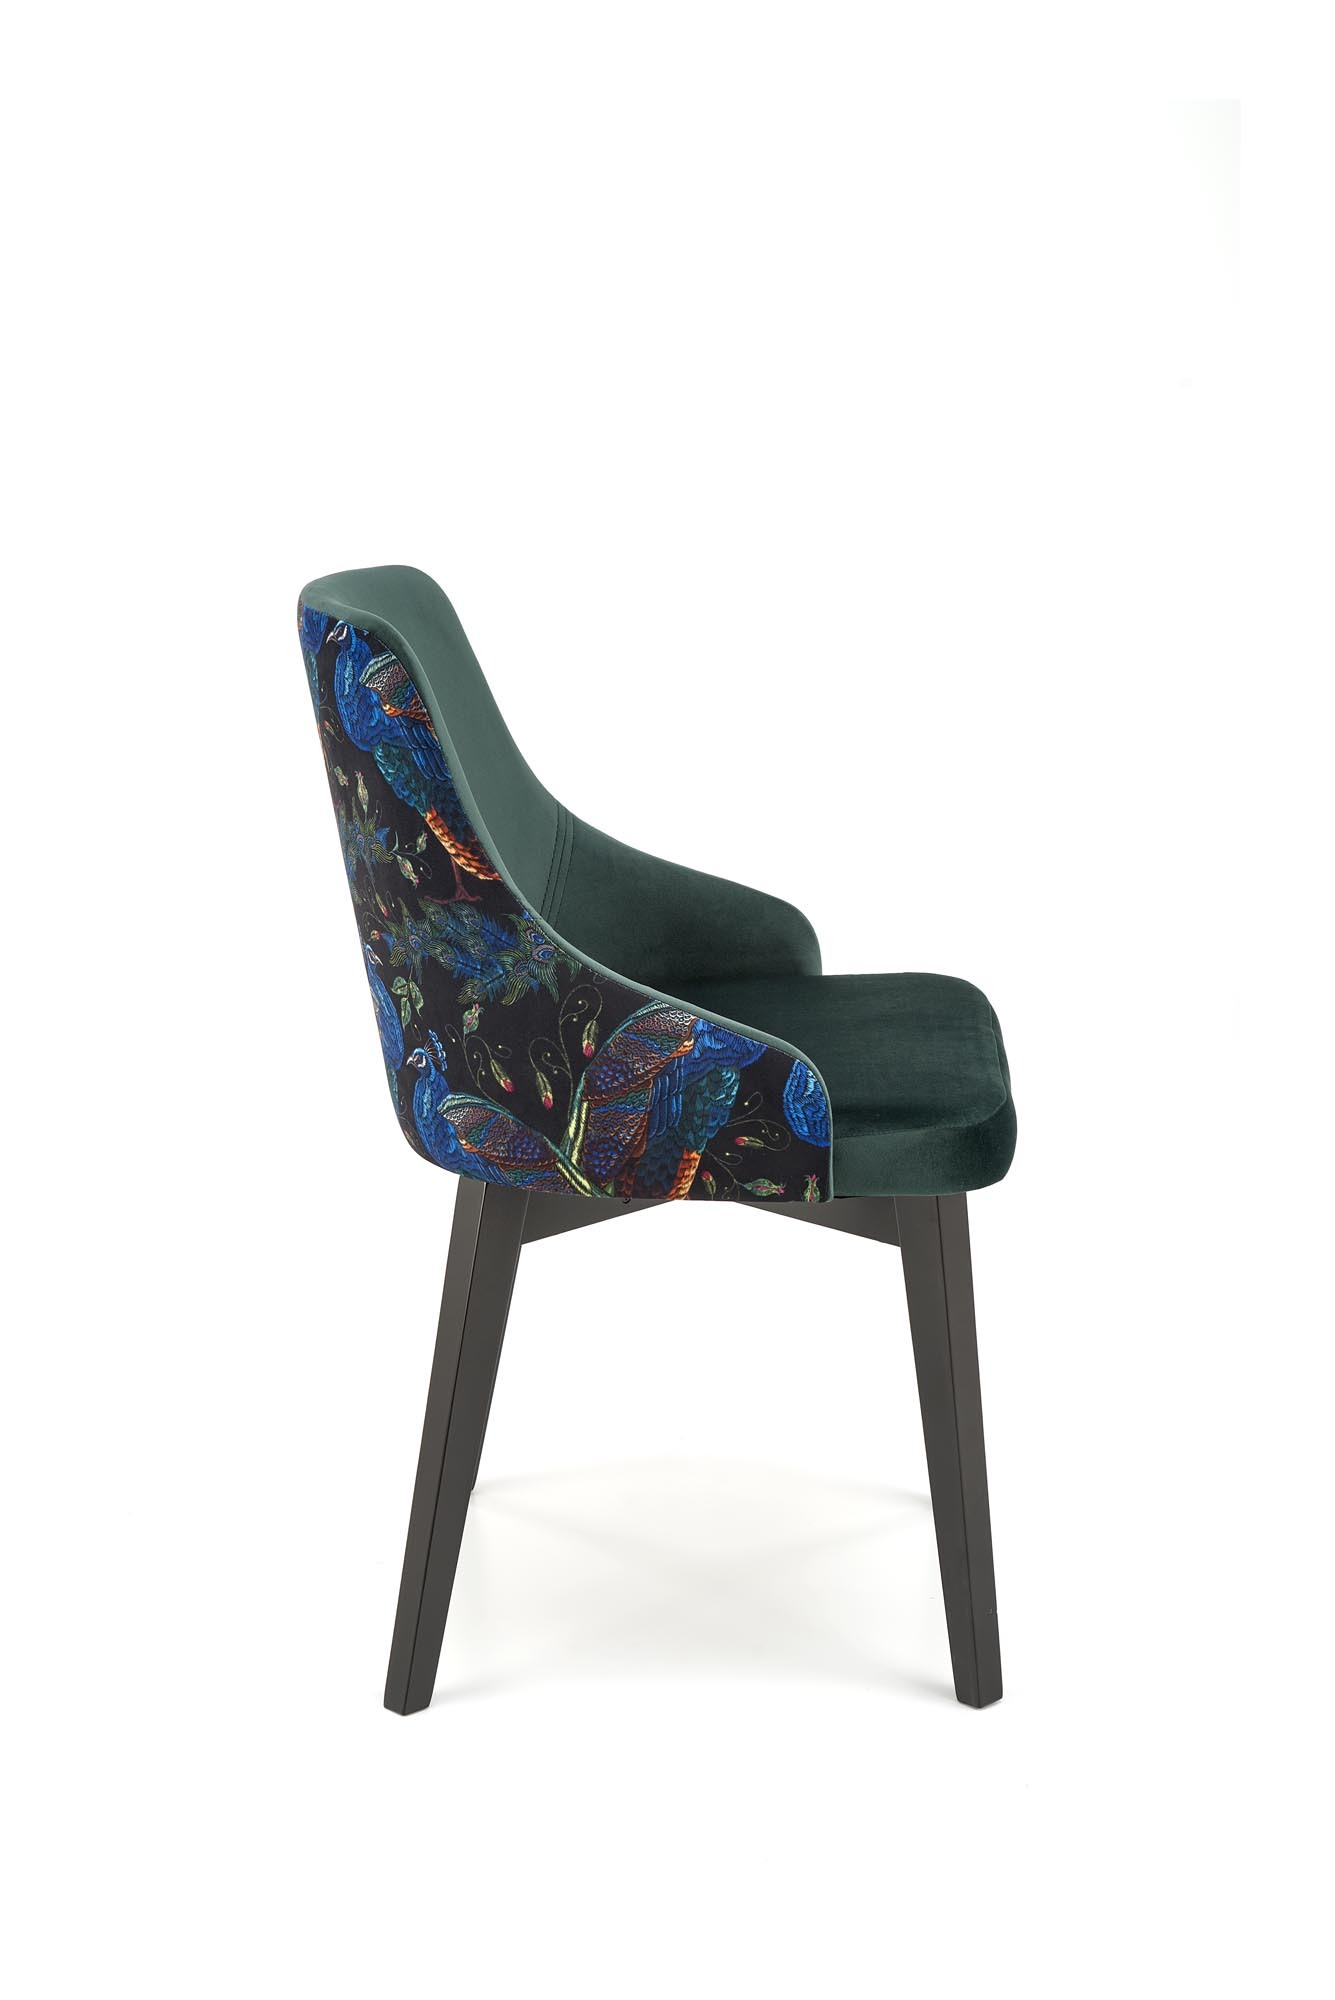 ENDO krzesło czarny / tap: BLUVEL 78 (c. zielony)